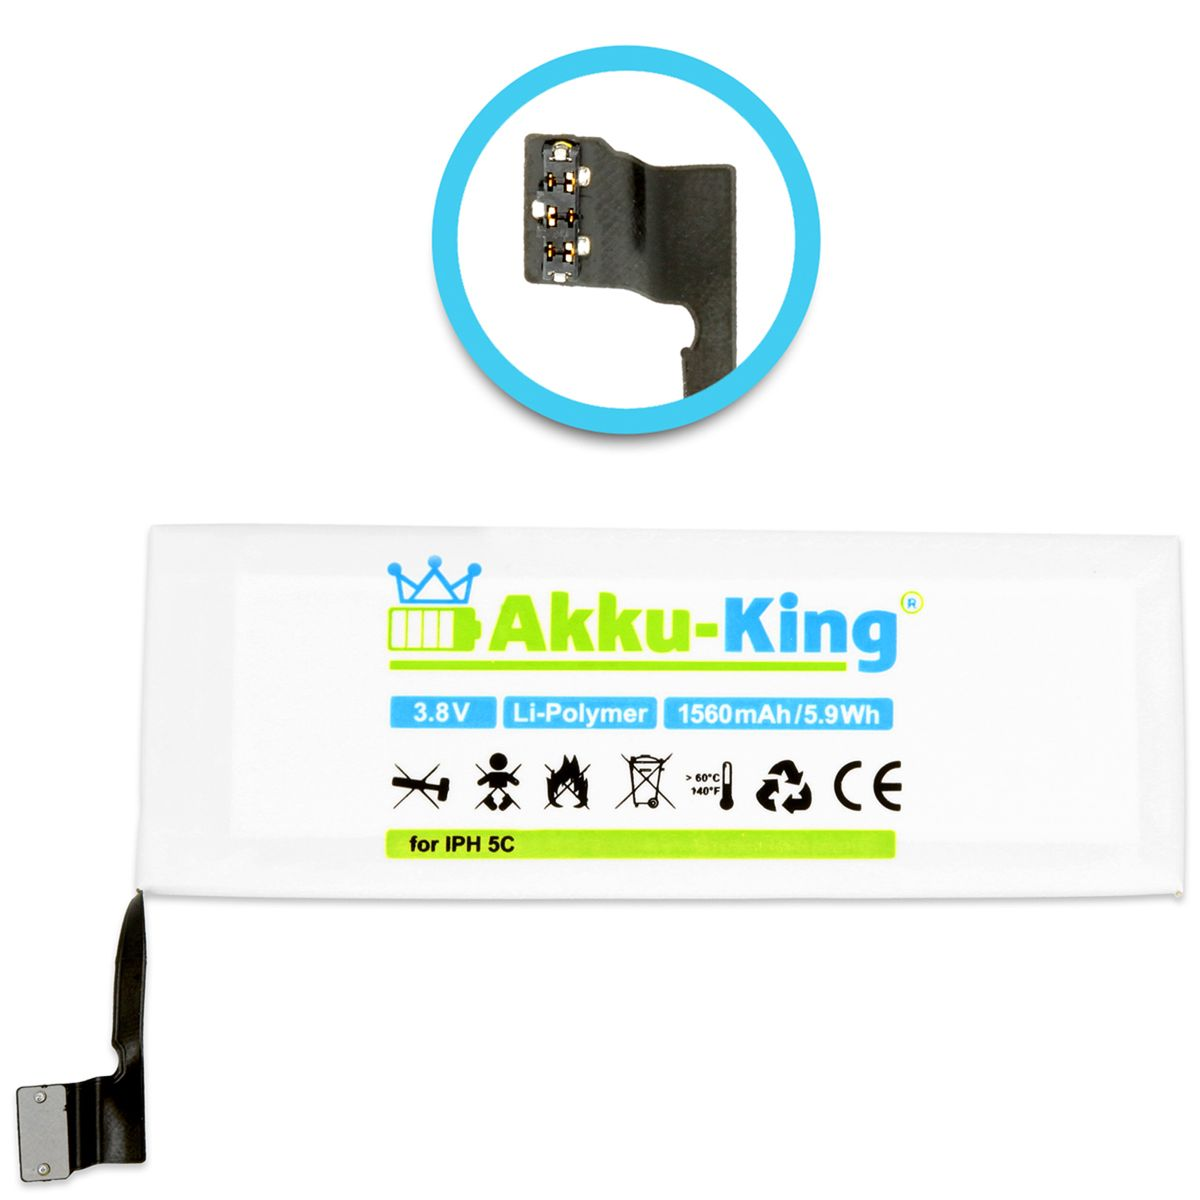 AKKU-KING Akku 5C Handy-Akku, iPhone Li-Polymer Volt, 1560mAh 3.8 mit kompatibel